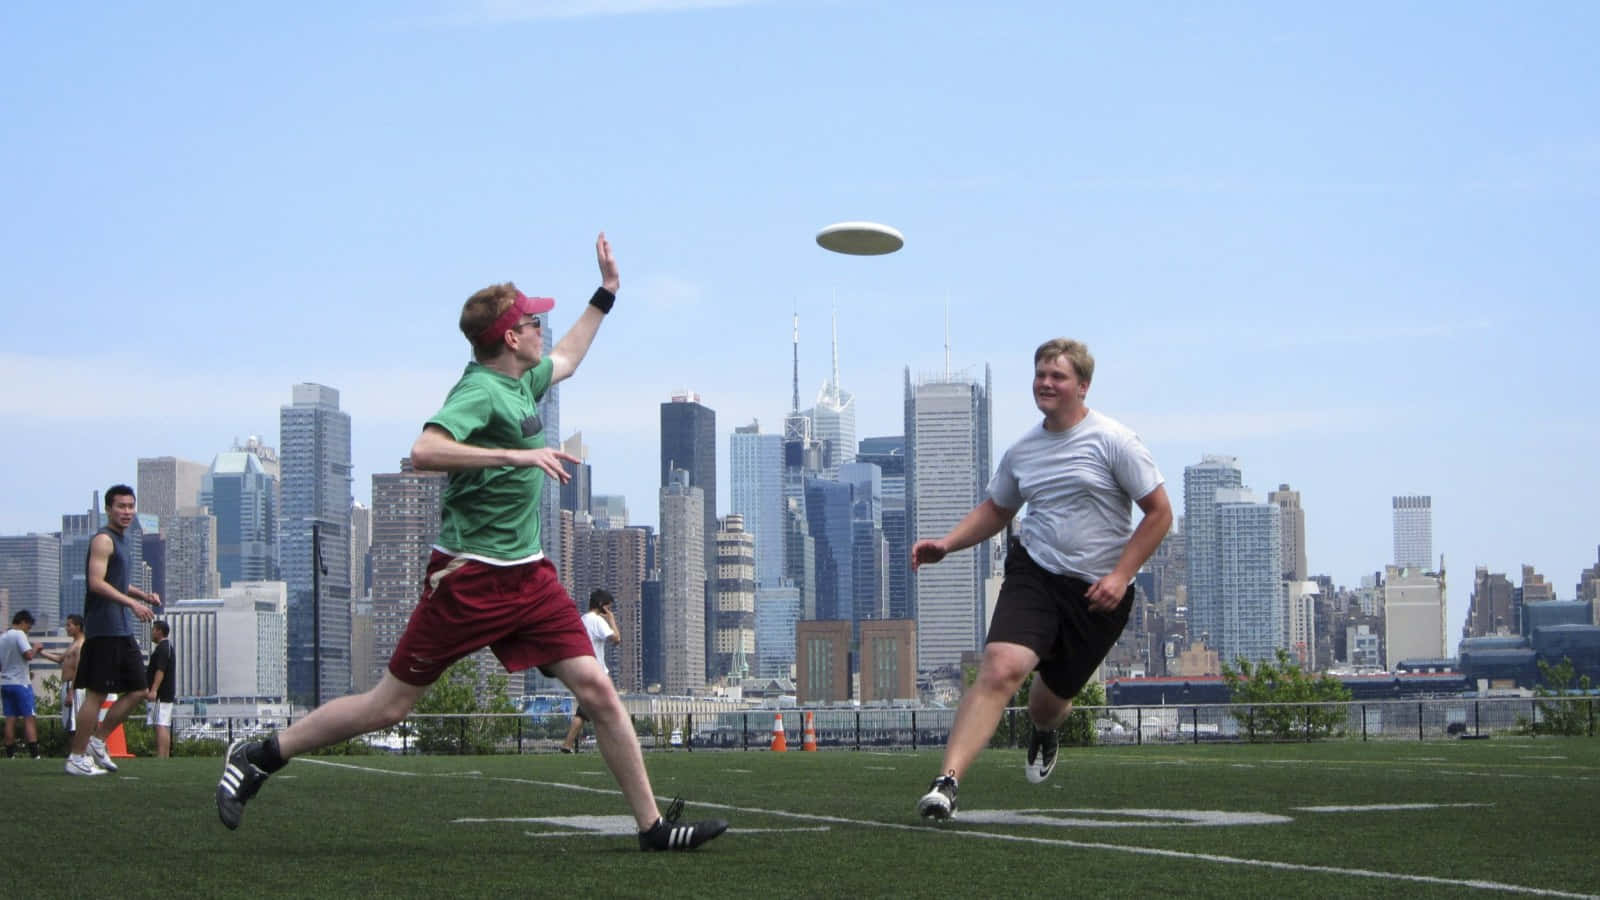 Intensogioco Di Ultimate Frisbee In Azione